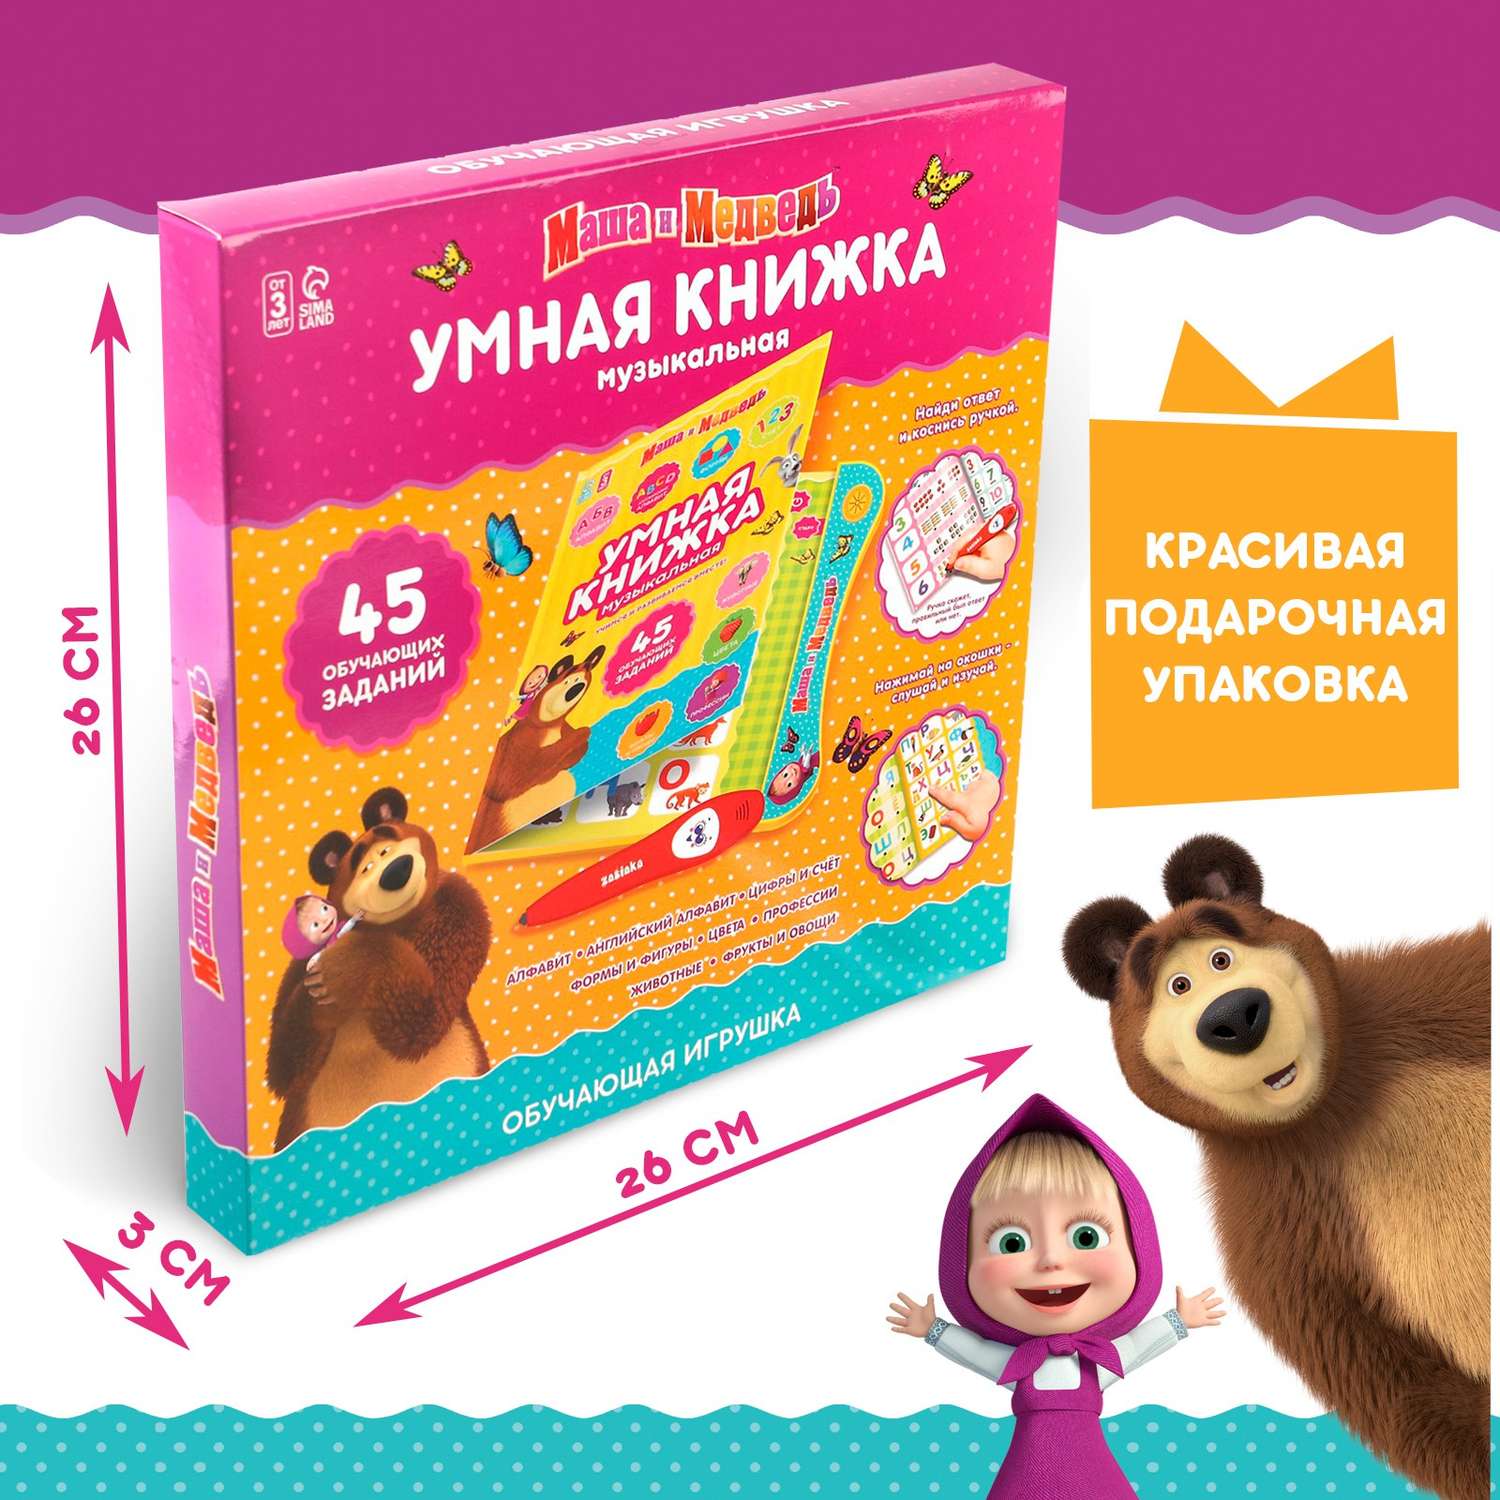 Обучающая игрушка Маша и медведь «Умная книга» - фото 1